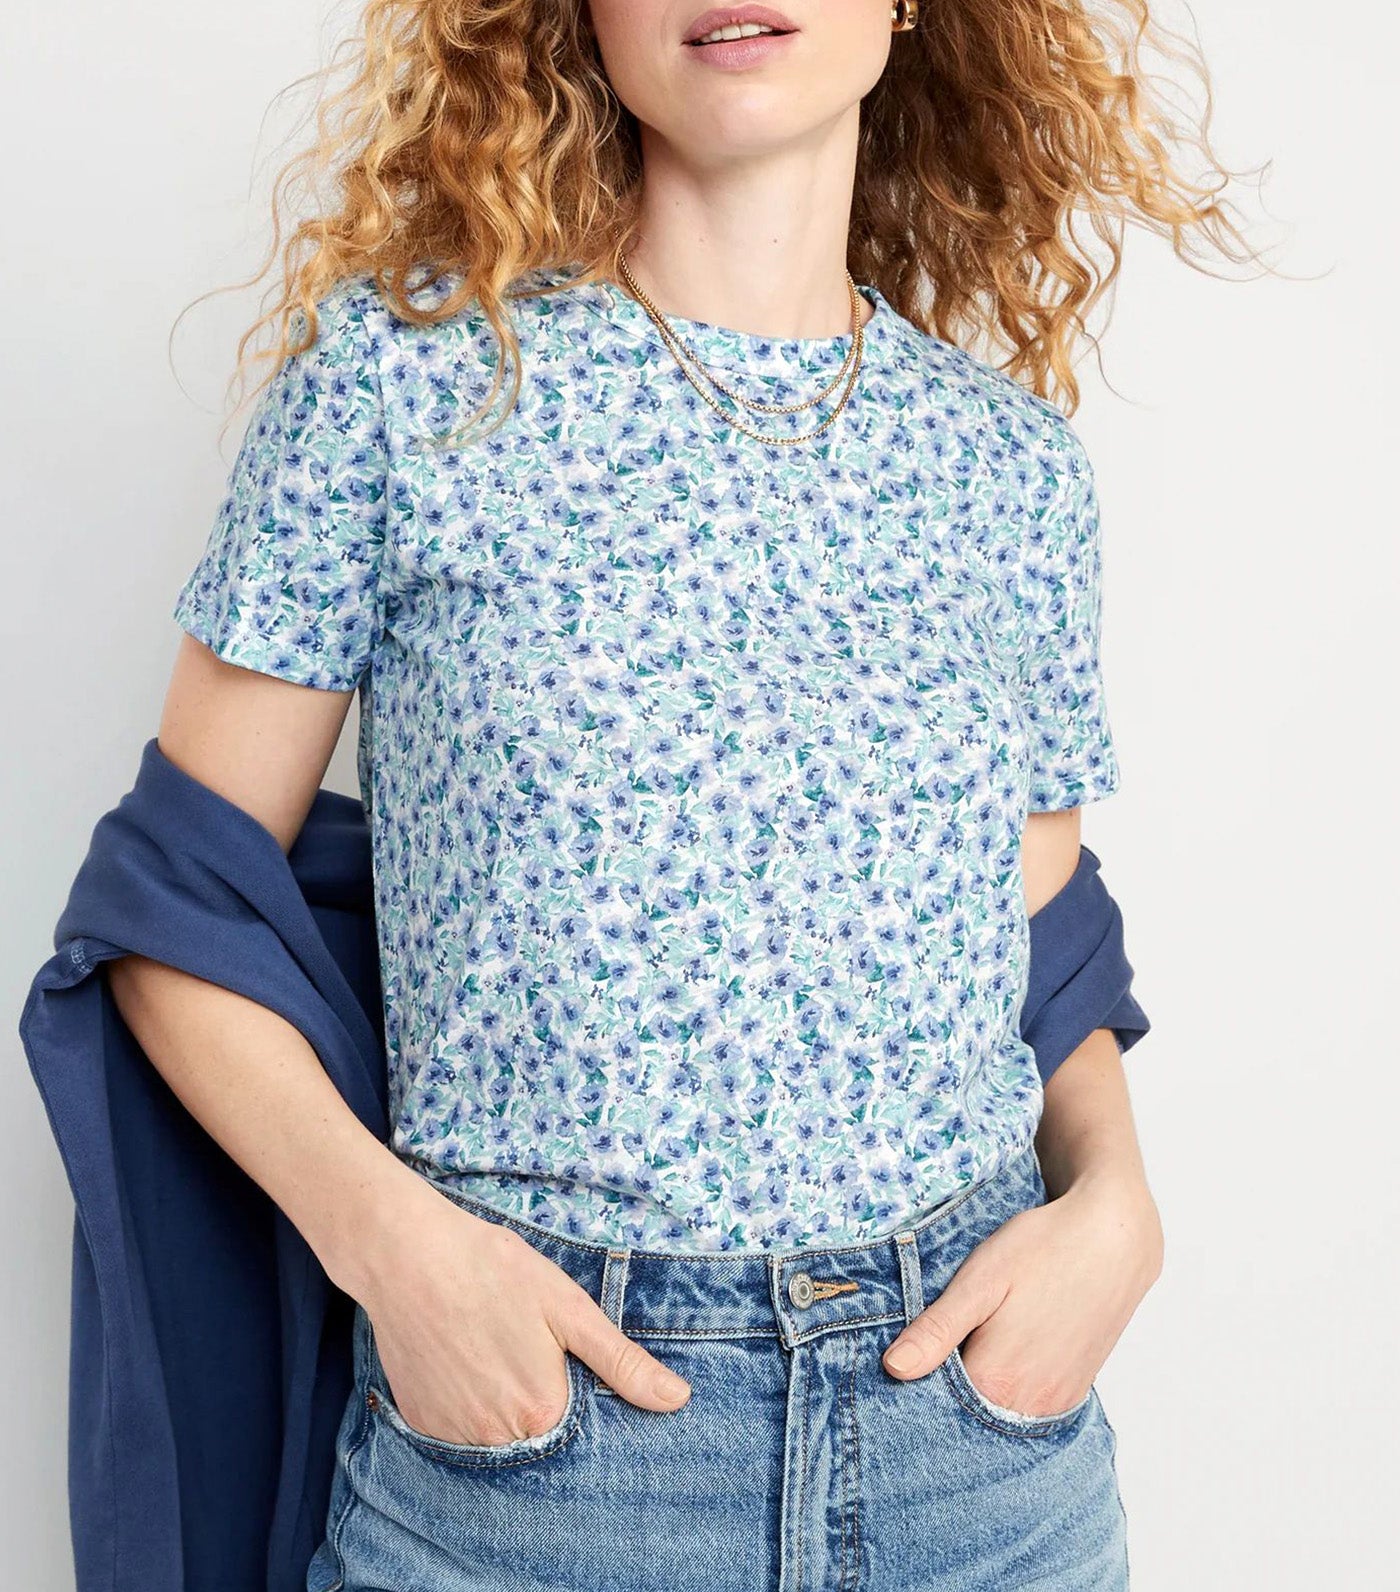 EveryWear Printed Slub-Knit T-Shirt for Women Blue Floral